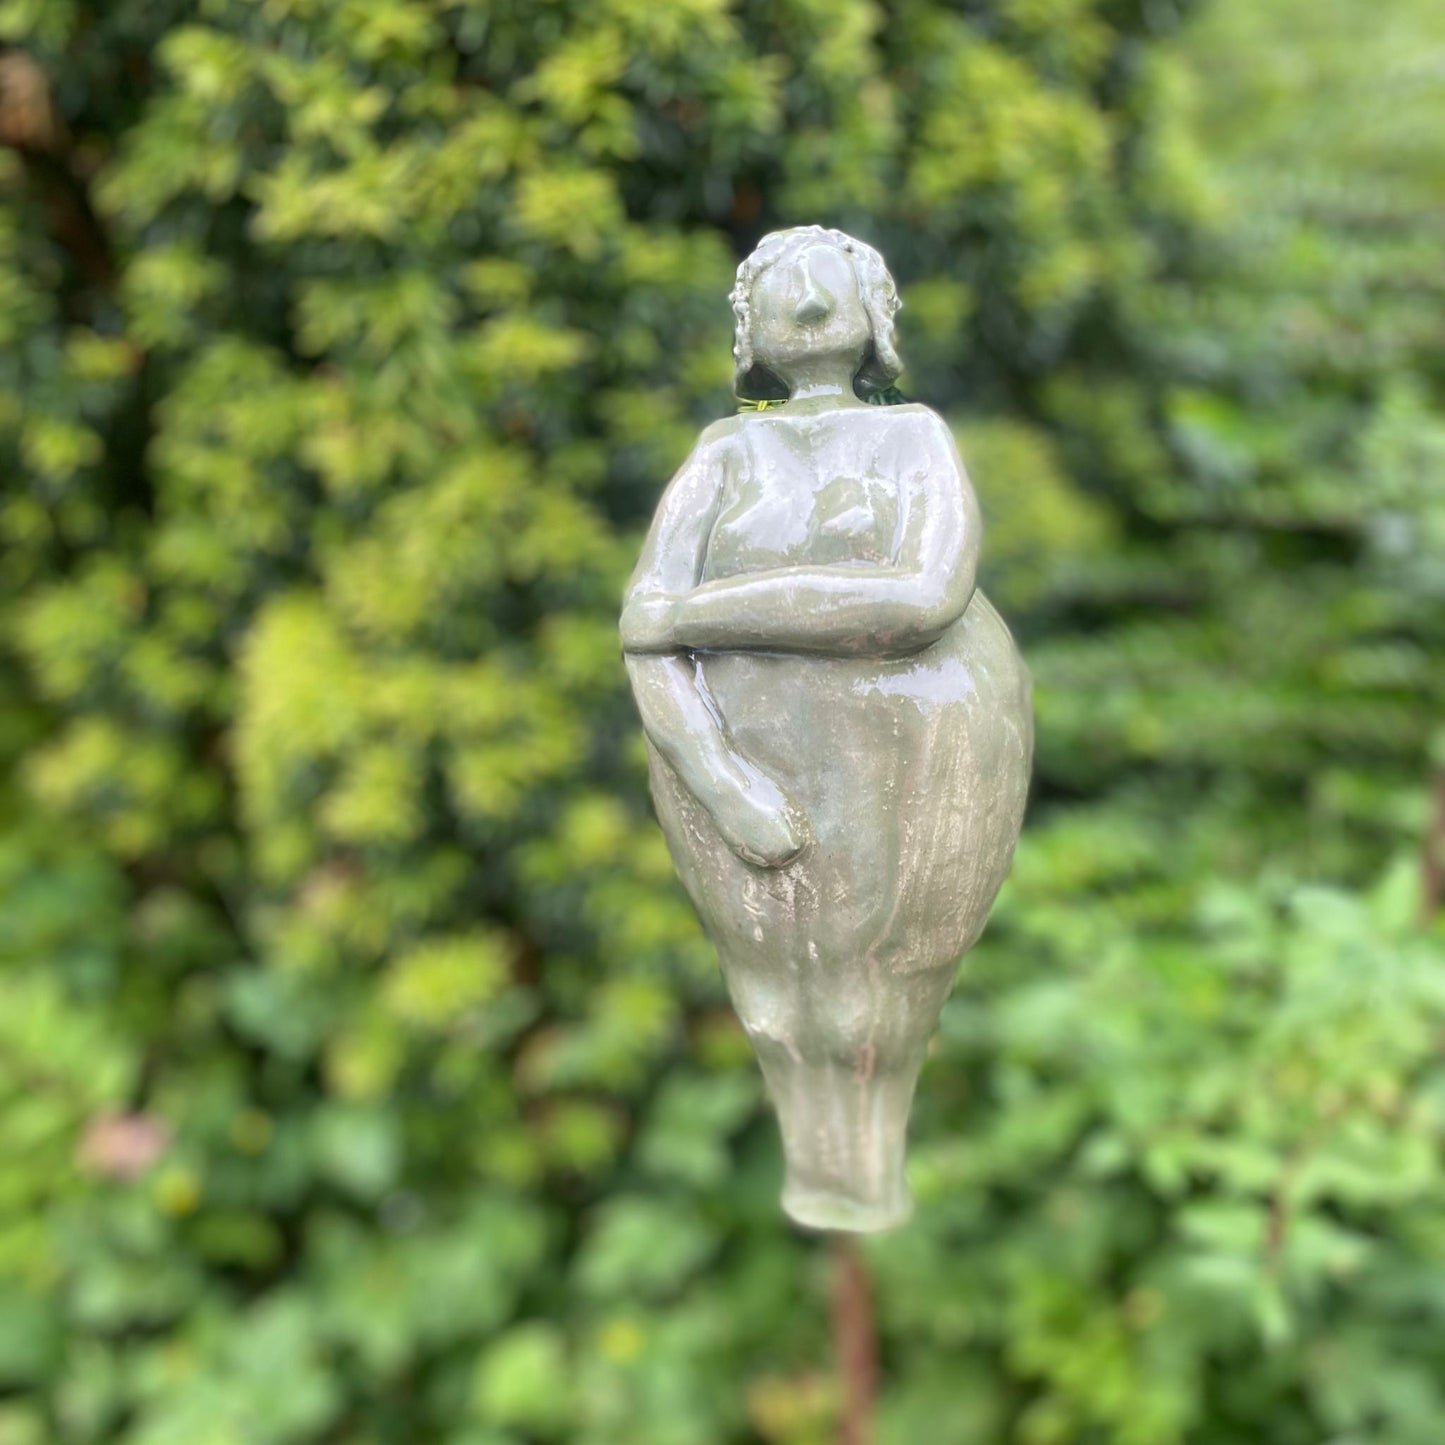 Keramikfigur, Gartenfigur, apfelgrün und glänzend glasiert. Serie "Lustige Weiber"